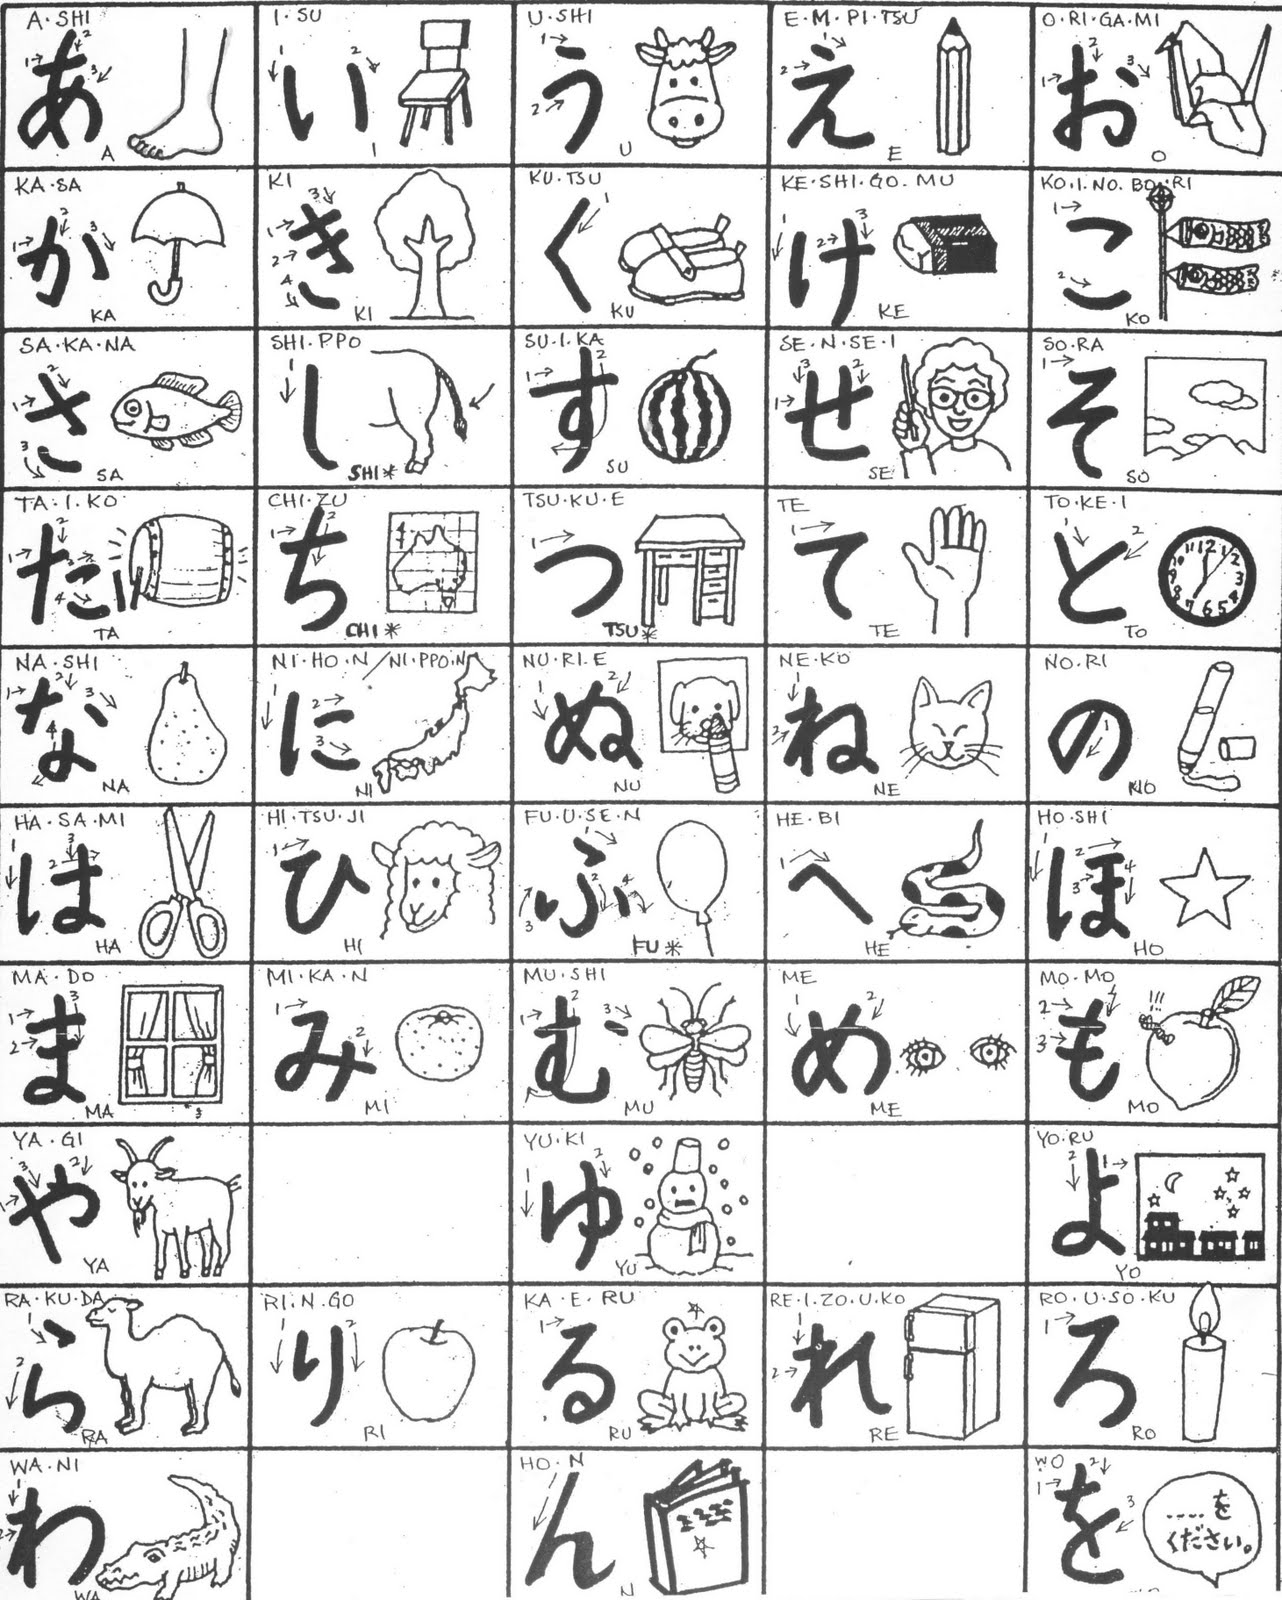 ... Japanese language learn Japanese for Fun online: Hiragana worksheet 1